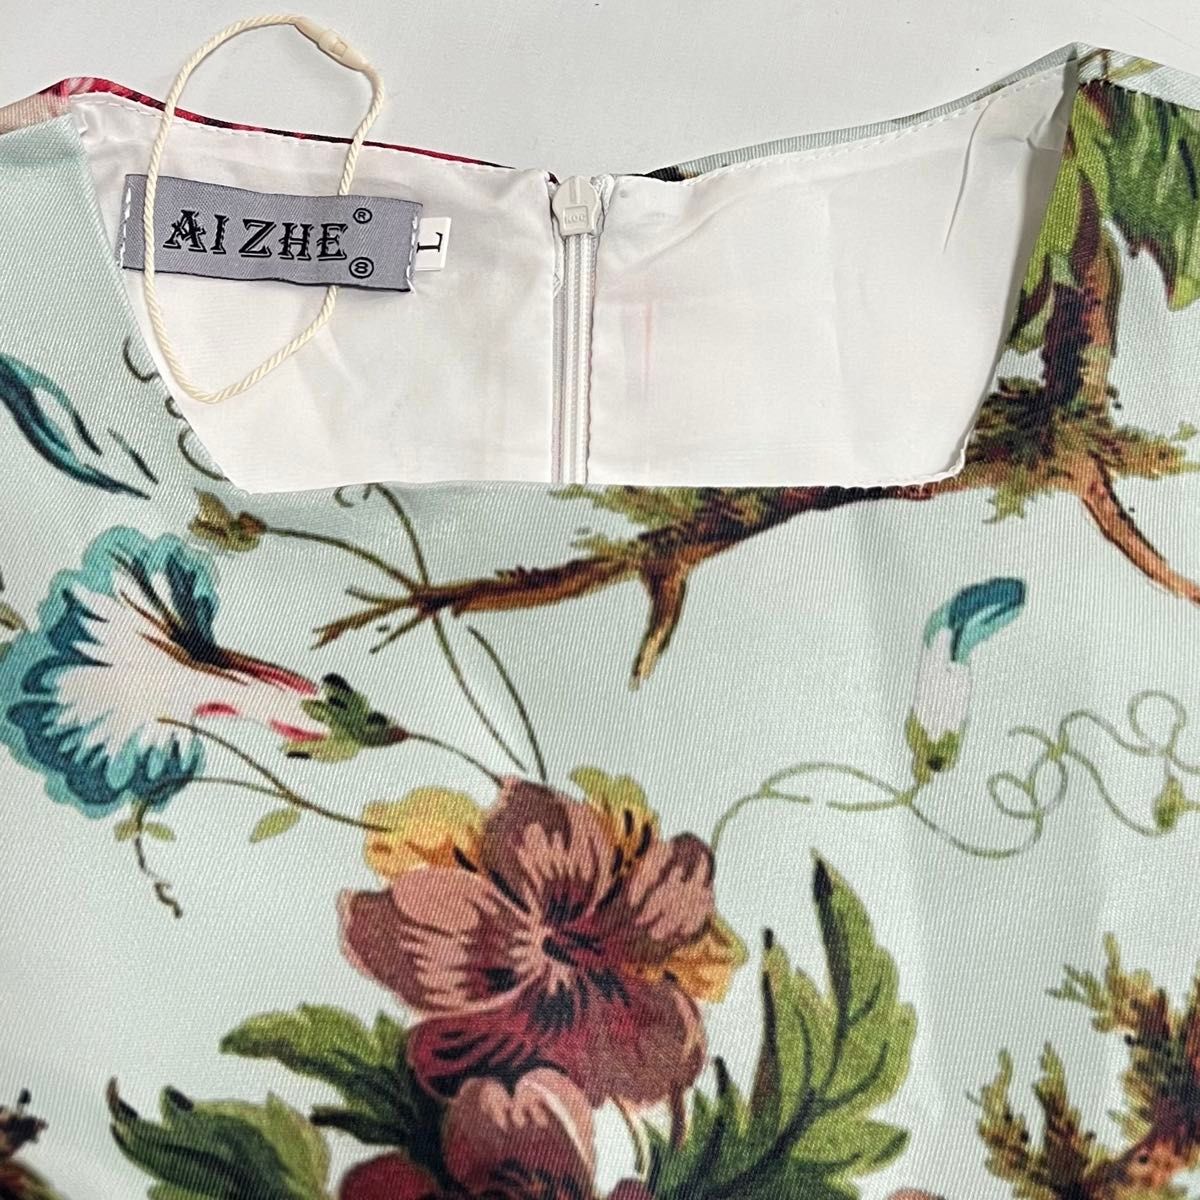 【新品未使用】AIZHE 高級感 ワンピース ロングワンピース 花柄 フローラルプリント パーティードレス ミモレ丈 大きいサイズ